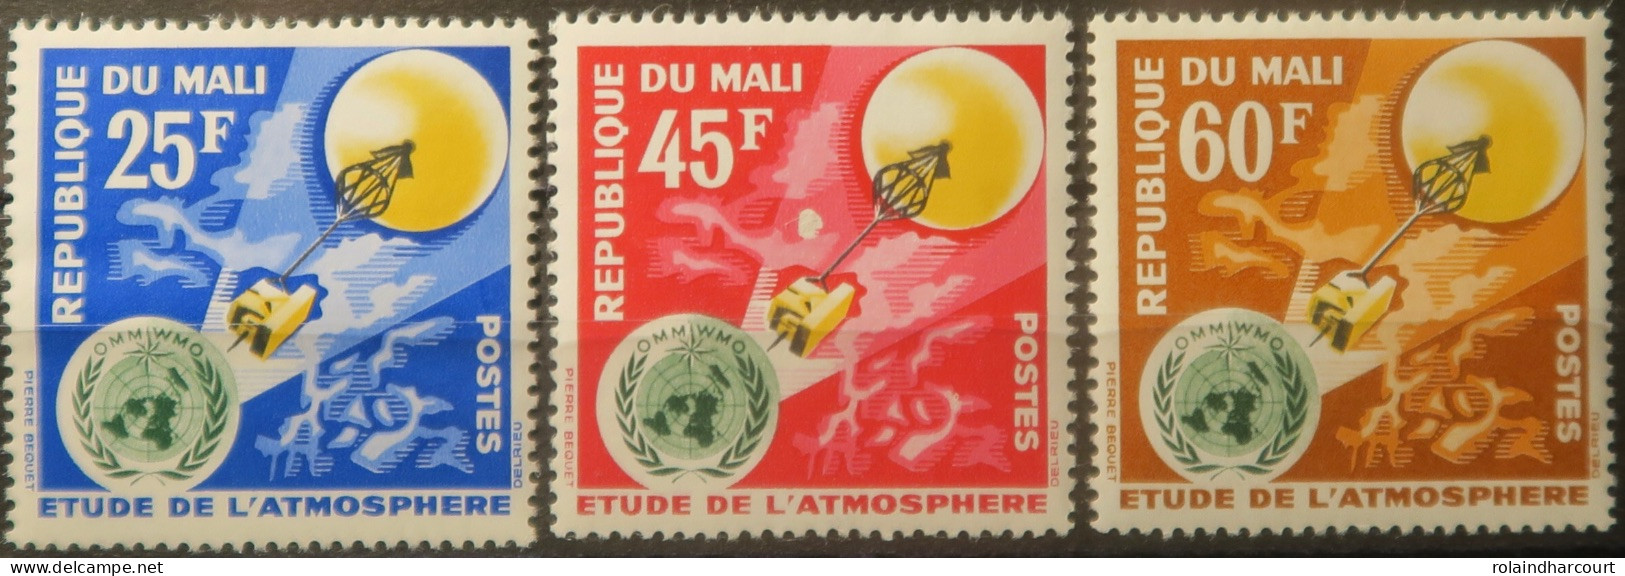 LP3844/2203 - MALI - 1963 - Etude De L'atmosphère - SERIE COMPLETE - N°47 Et 49 NEUFS** - Mali (1959-...)